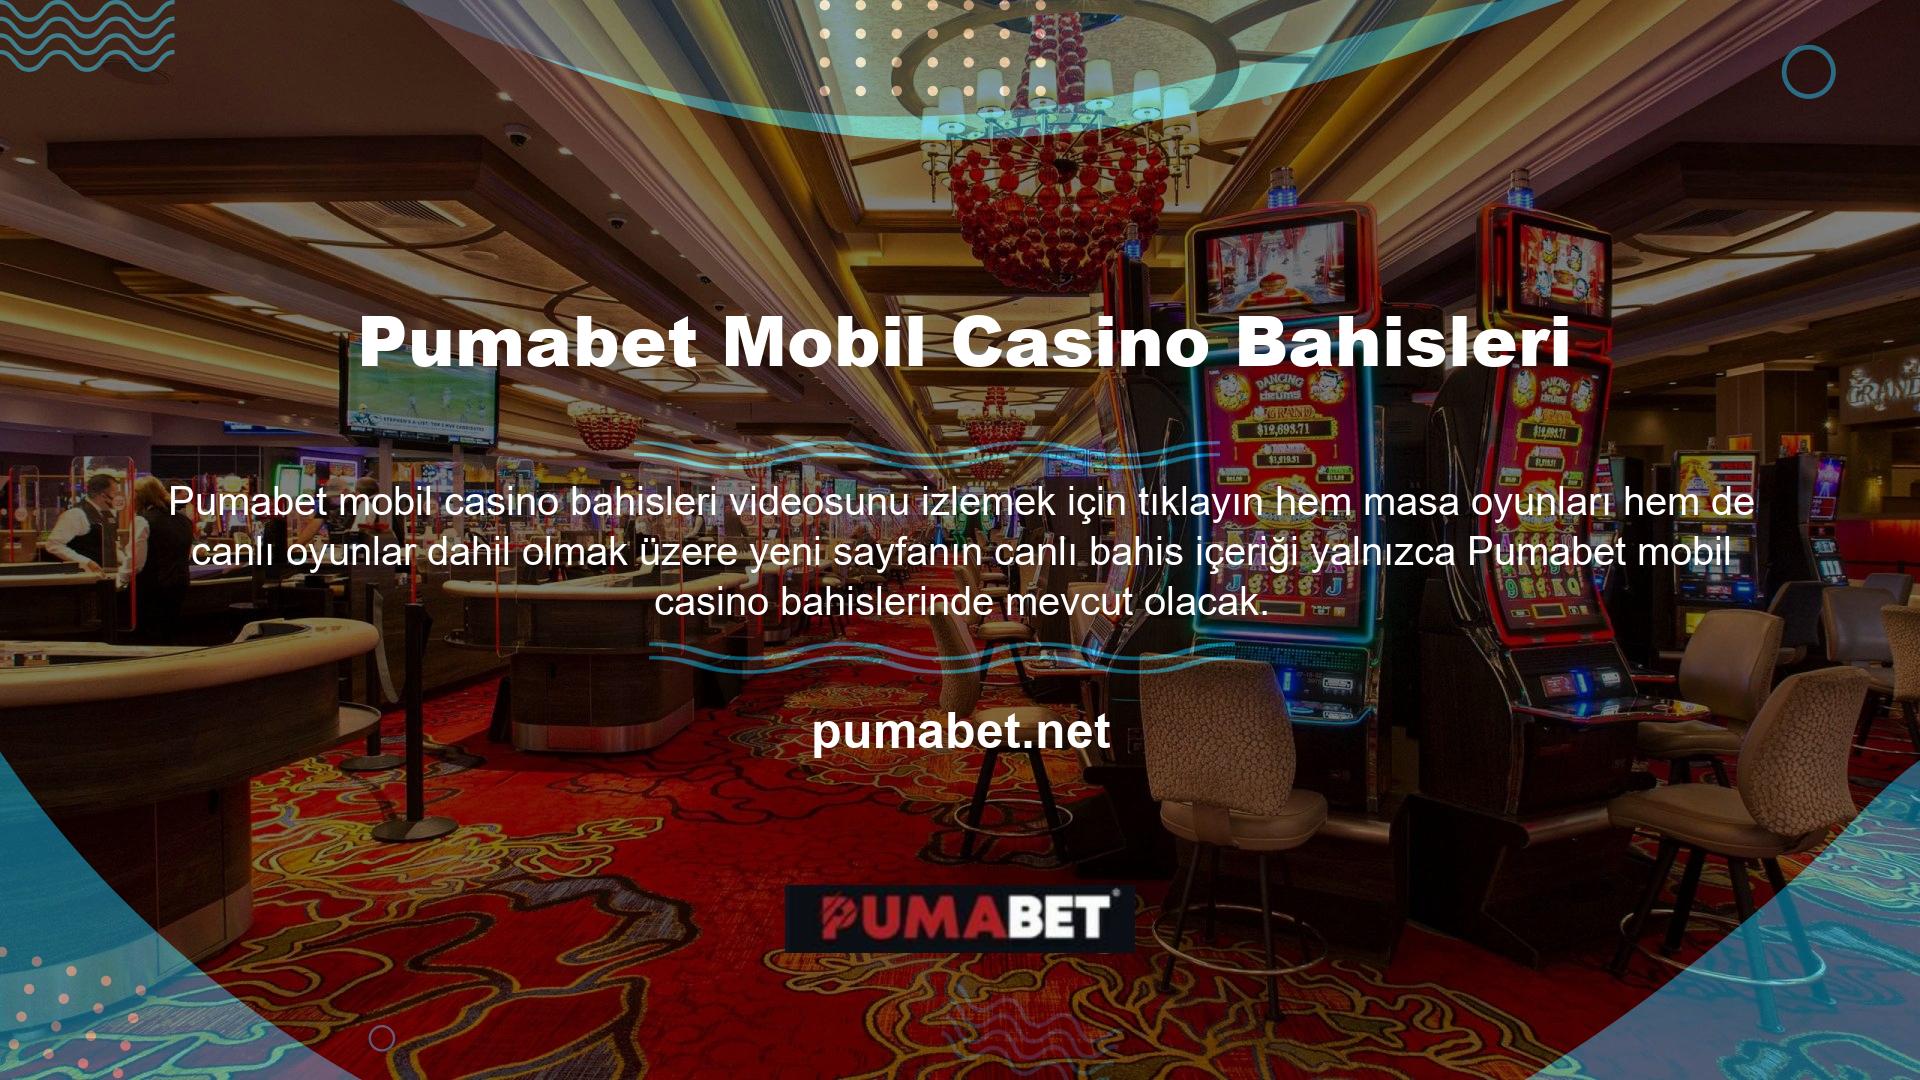 Pumabet mobil casino, Türk oyunları da dahil olmak üzere müşterilerin seçebileceği çeşitli yeni oyun türleri sunmaktadır